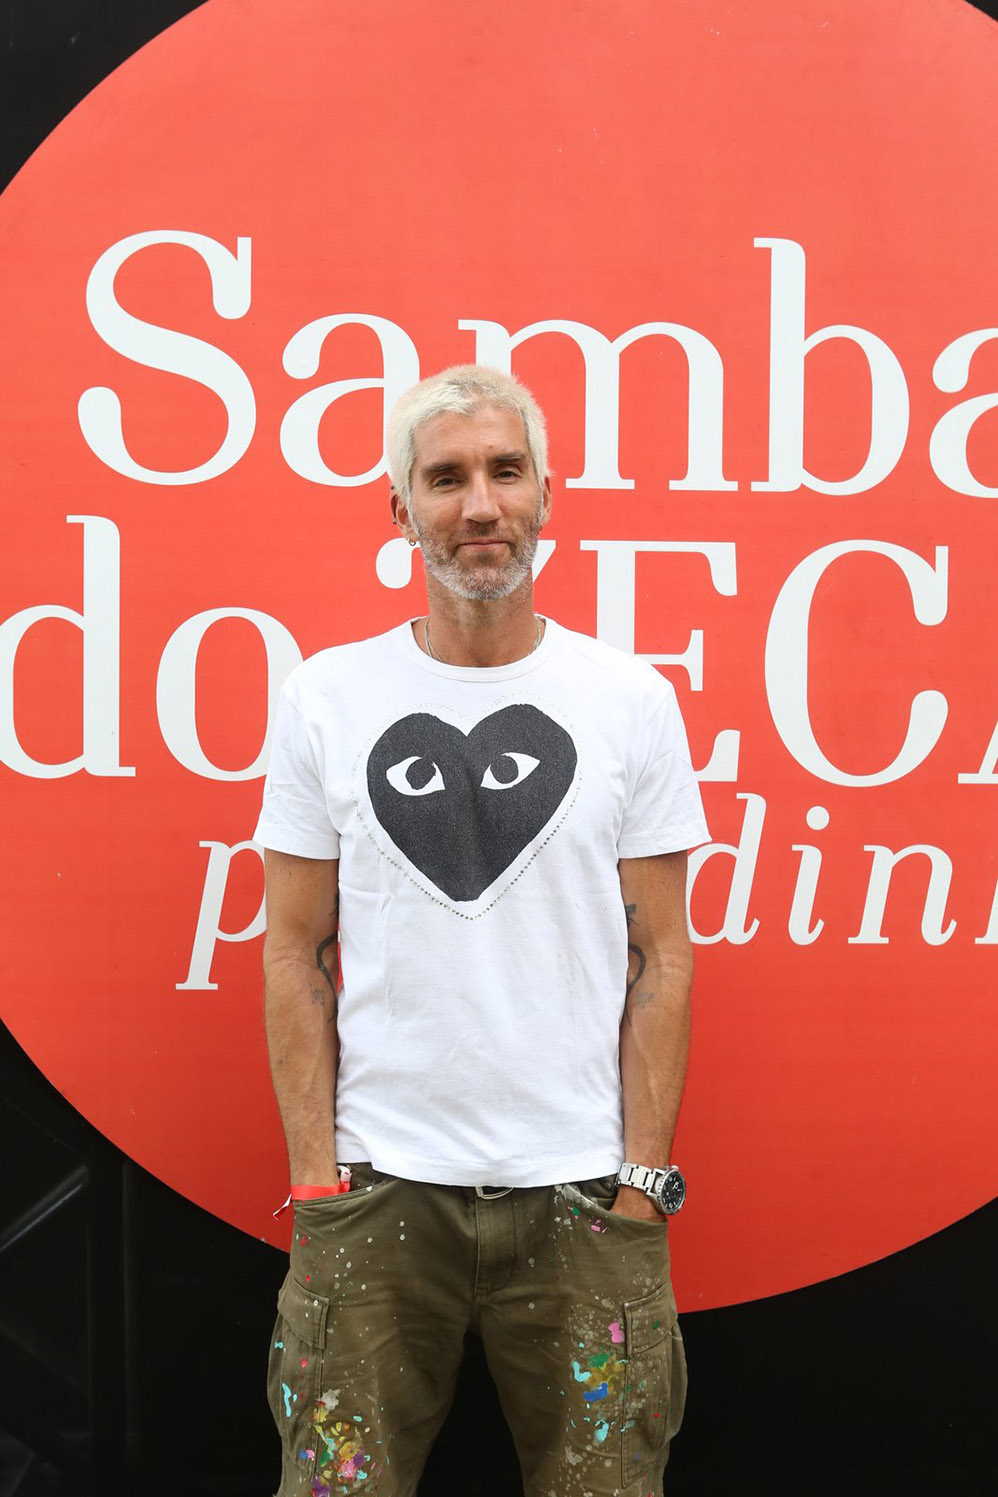 Zeca Pagodinho reúne amigos famososem Roda de Samba